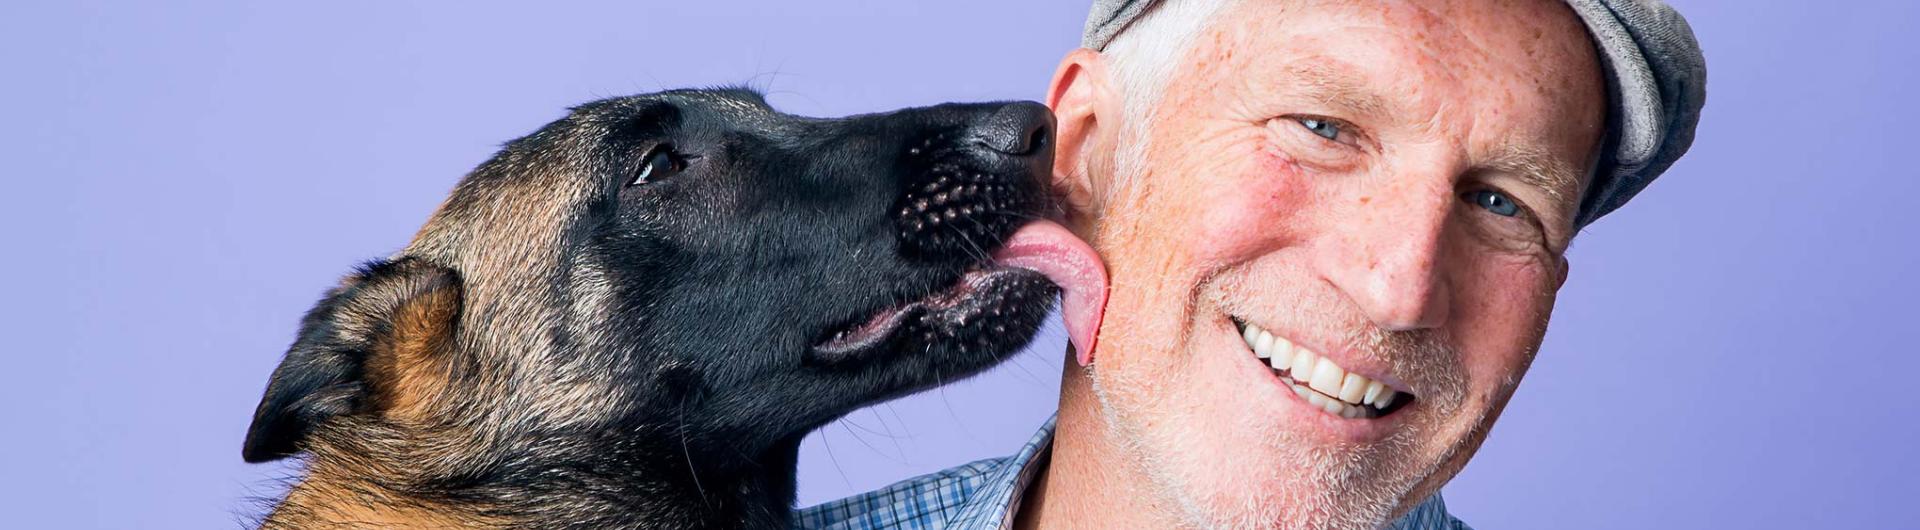 Dog licks owner's face